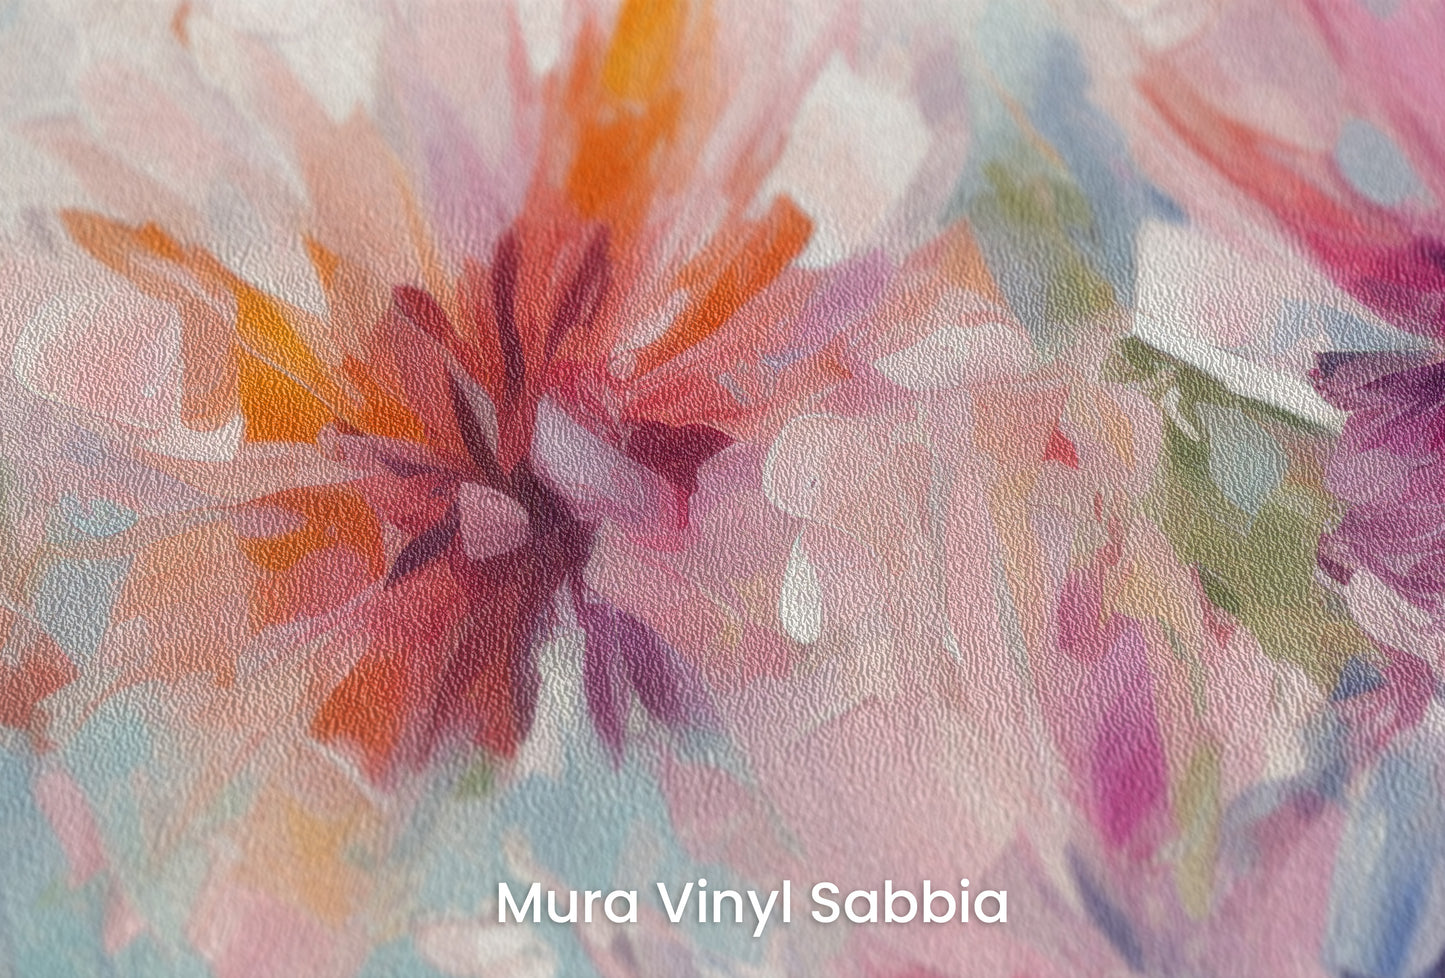 Zbliżenie na artystyczną fototapetę o nazwie Blushing Floral Delicacy na podłożu Mura Vinyl Sabbia struktura grubego ziarna piasku.